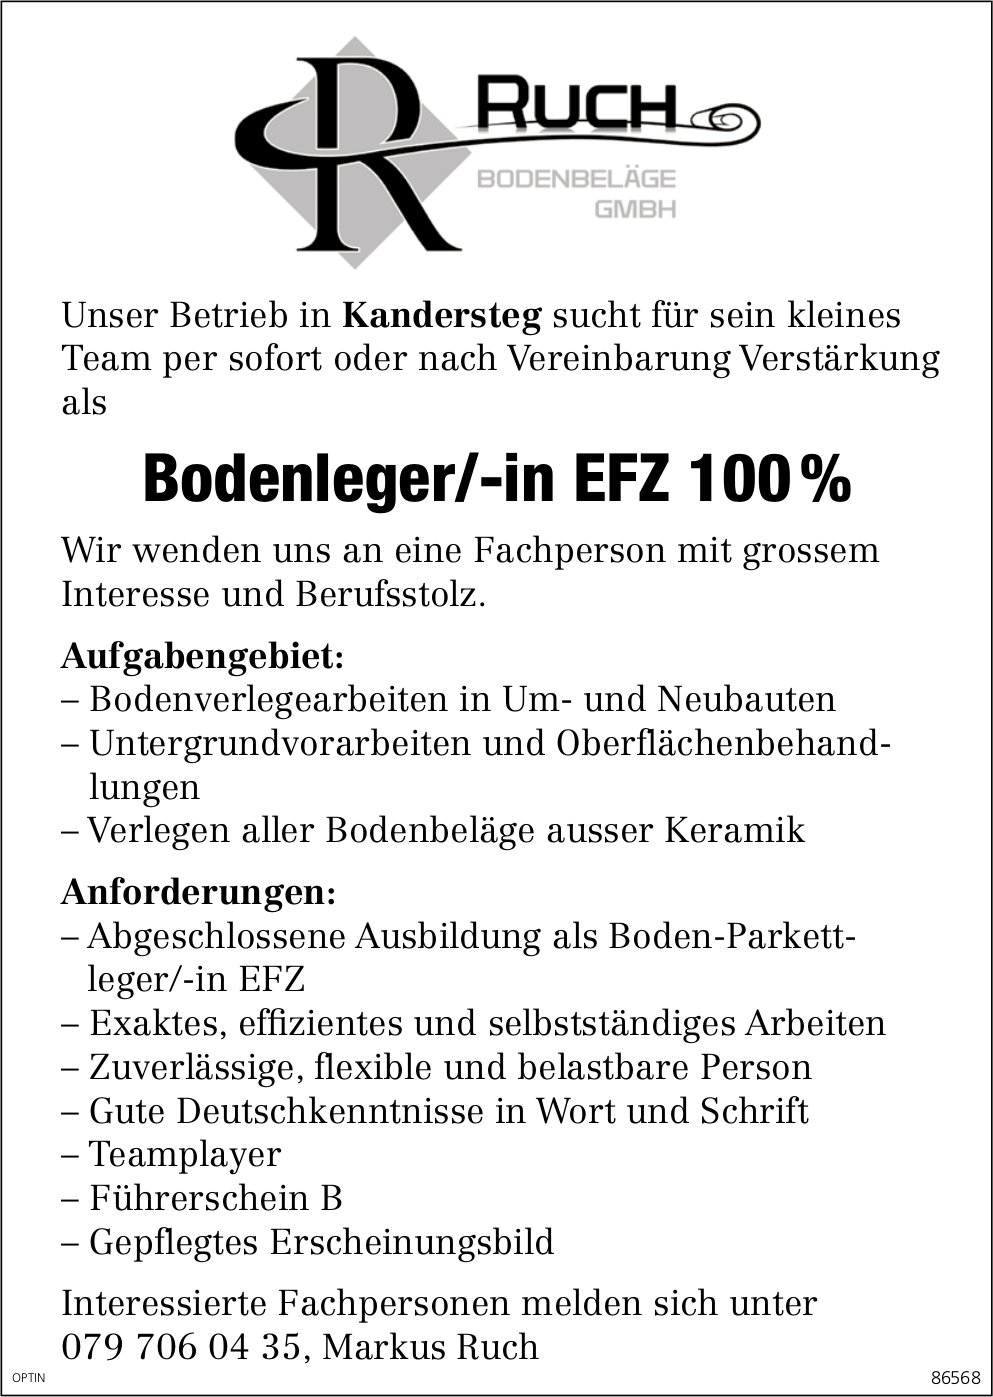 Bodenleger/-in EFZ 100 %, Ruch Bodenbeläge GmbH, Kandersteg, gesucht